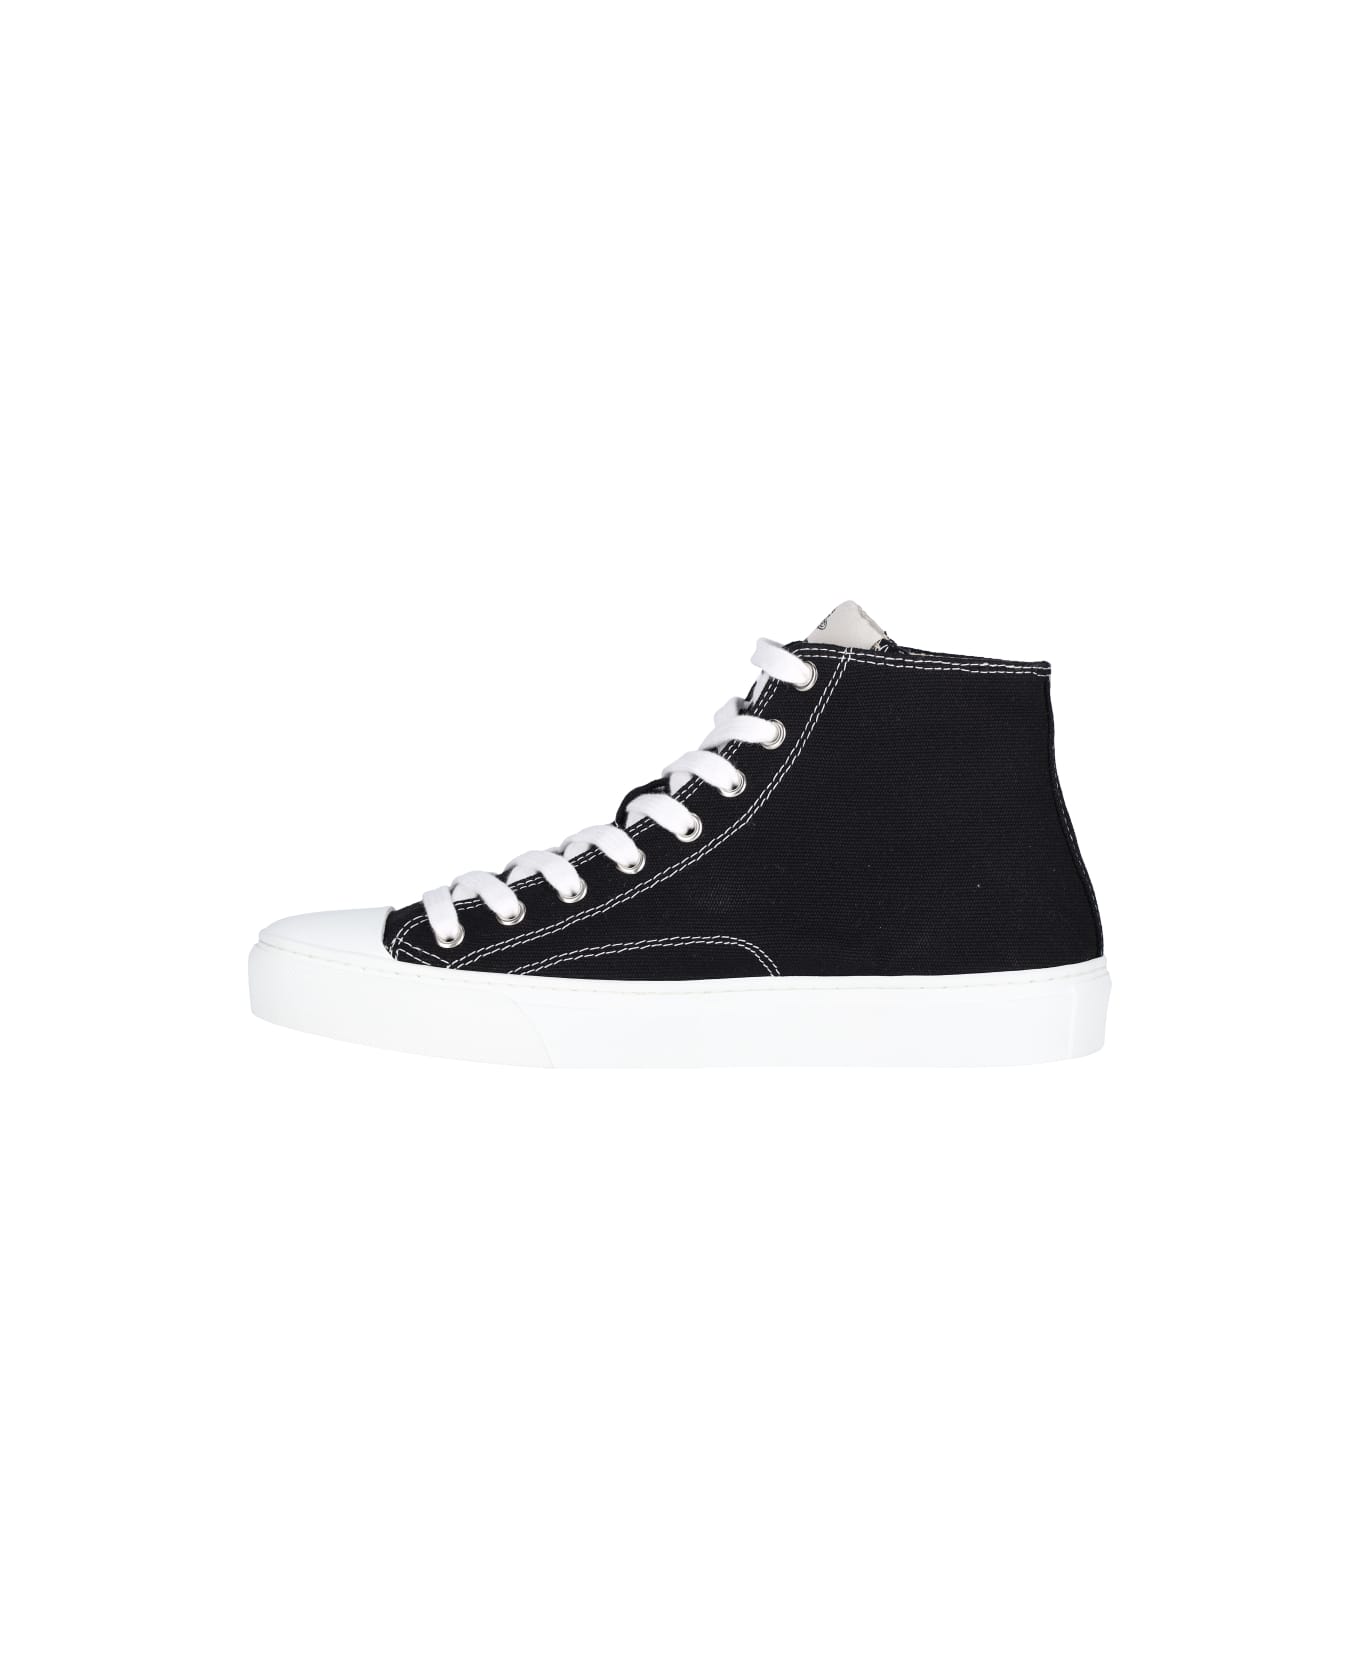 Vivienne Westwood "plimsoll High" Sneakers - Black   スニーカー